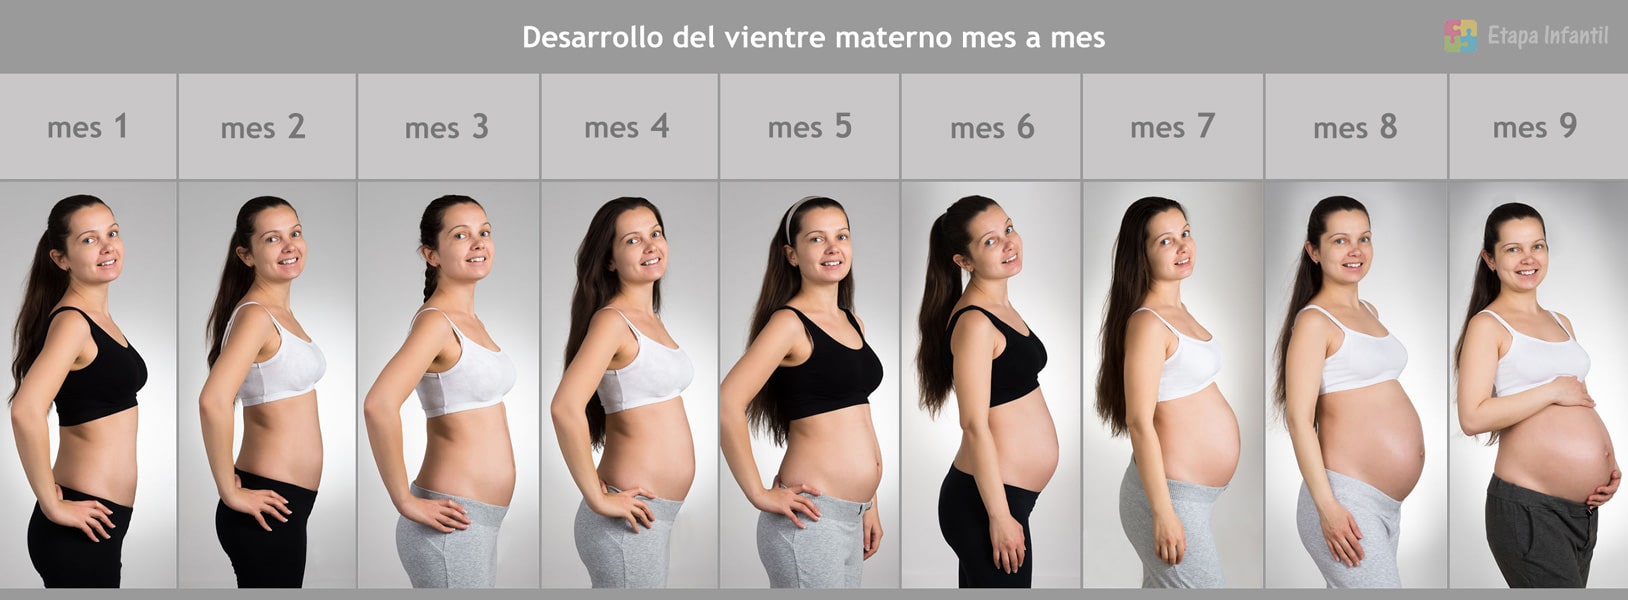 Mes A Mes Como Crece La Barriga Durante El Embarazo Etapa Infantil